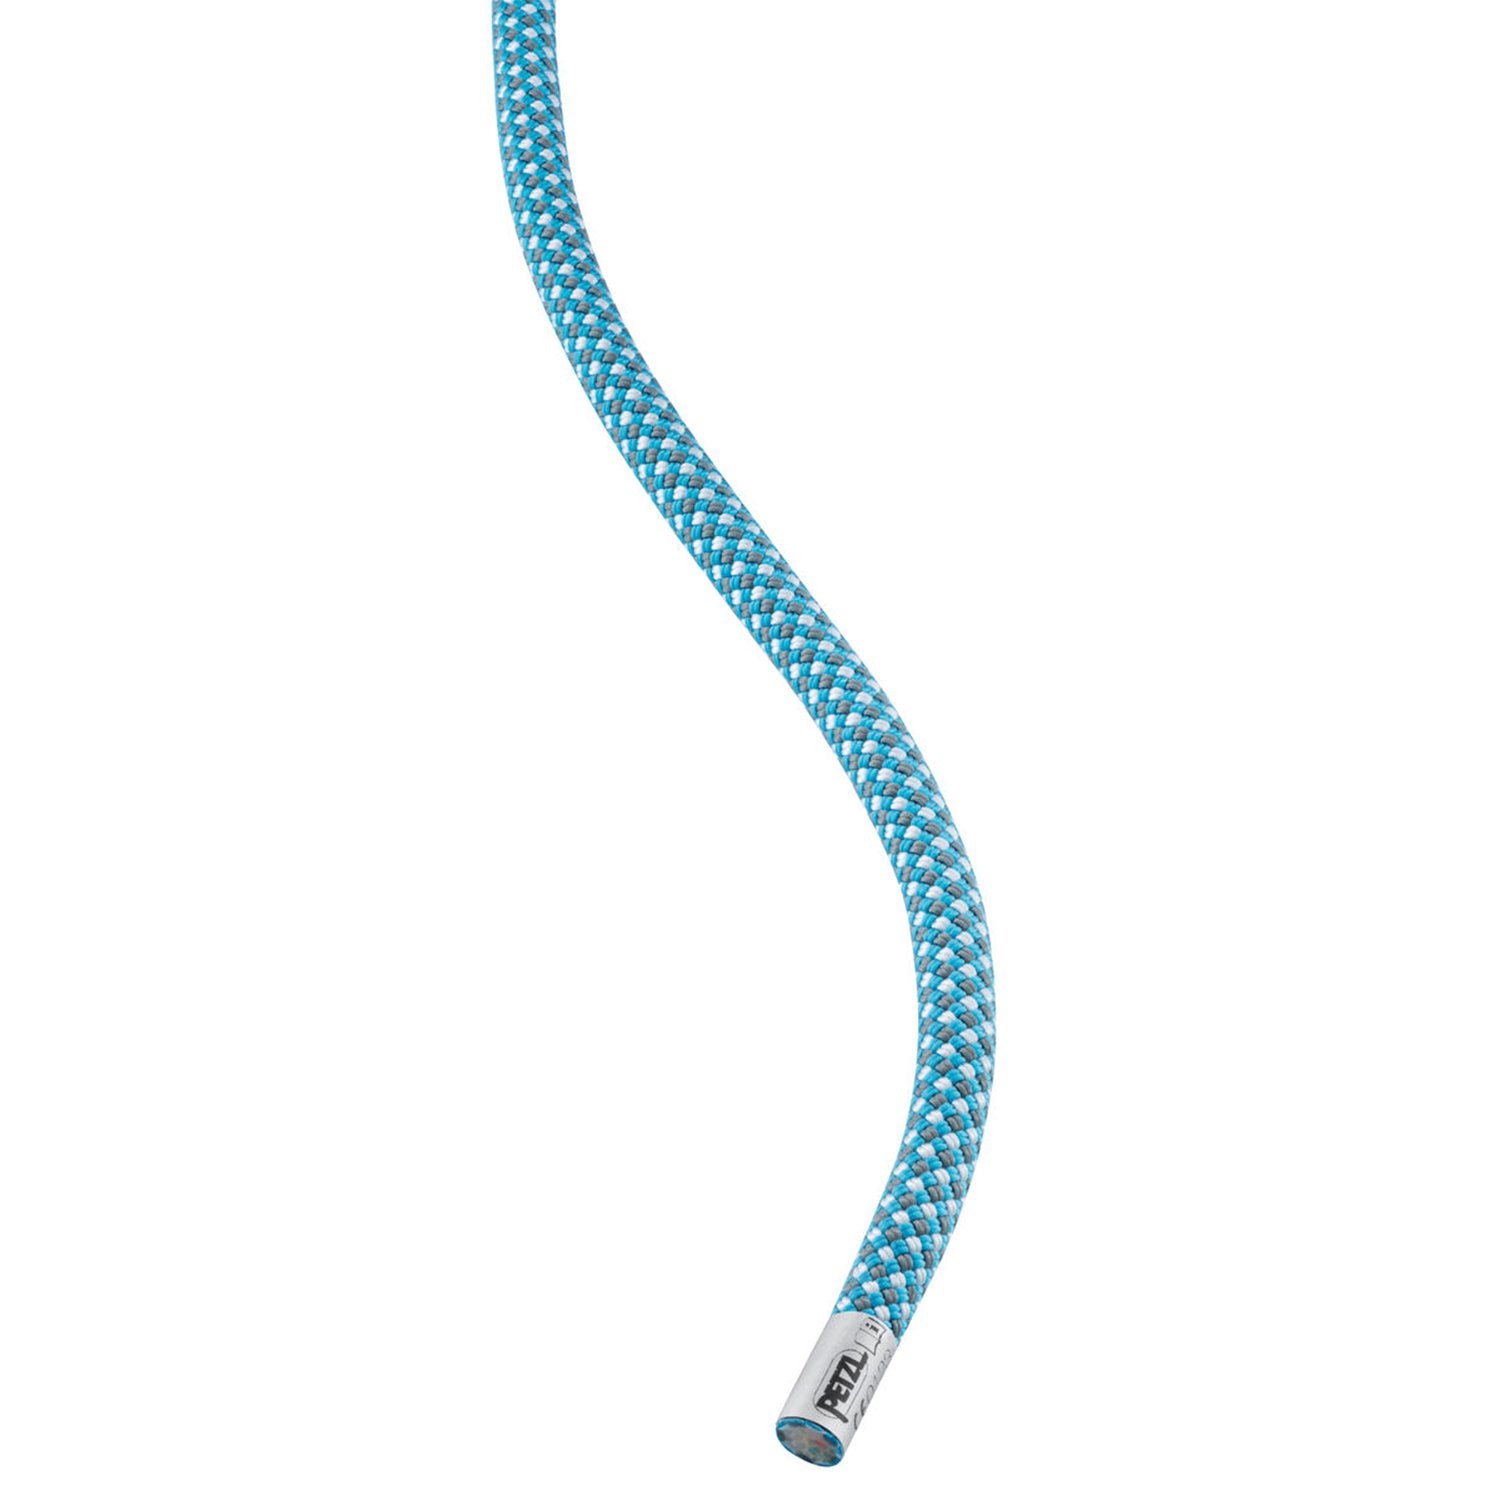 Buy Gokyo Petzl Mambo 50mtr Blue Rope | Climbing Rope at Gokyo Outdoor Clothing & Gear